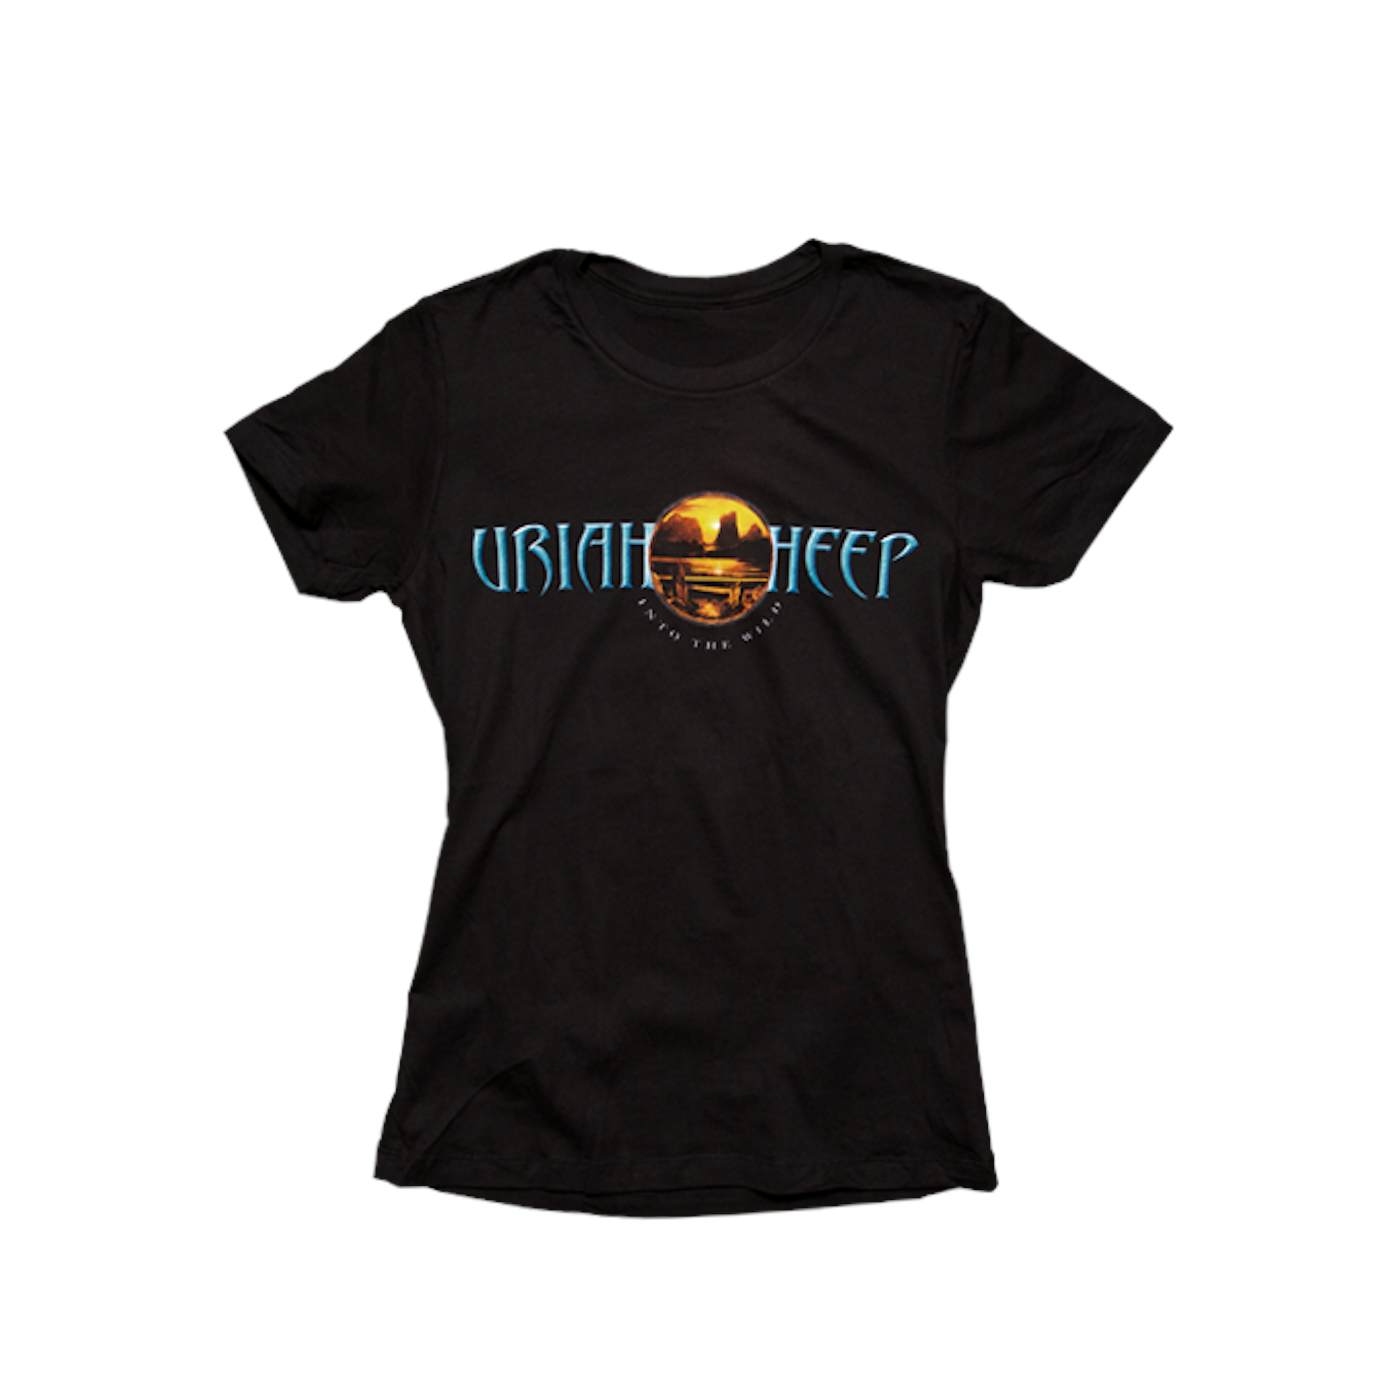 Uriah Heep "Into the Wild" Women's T-Shirt